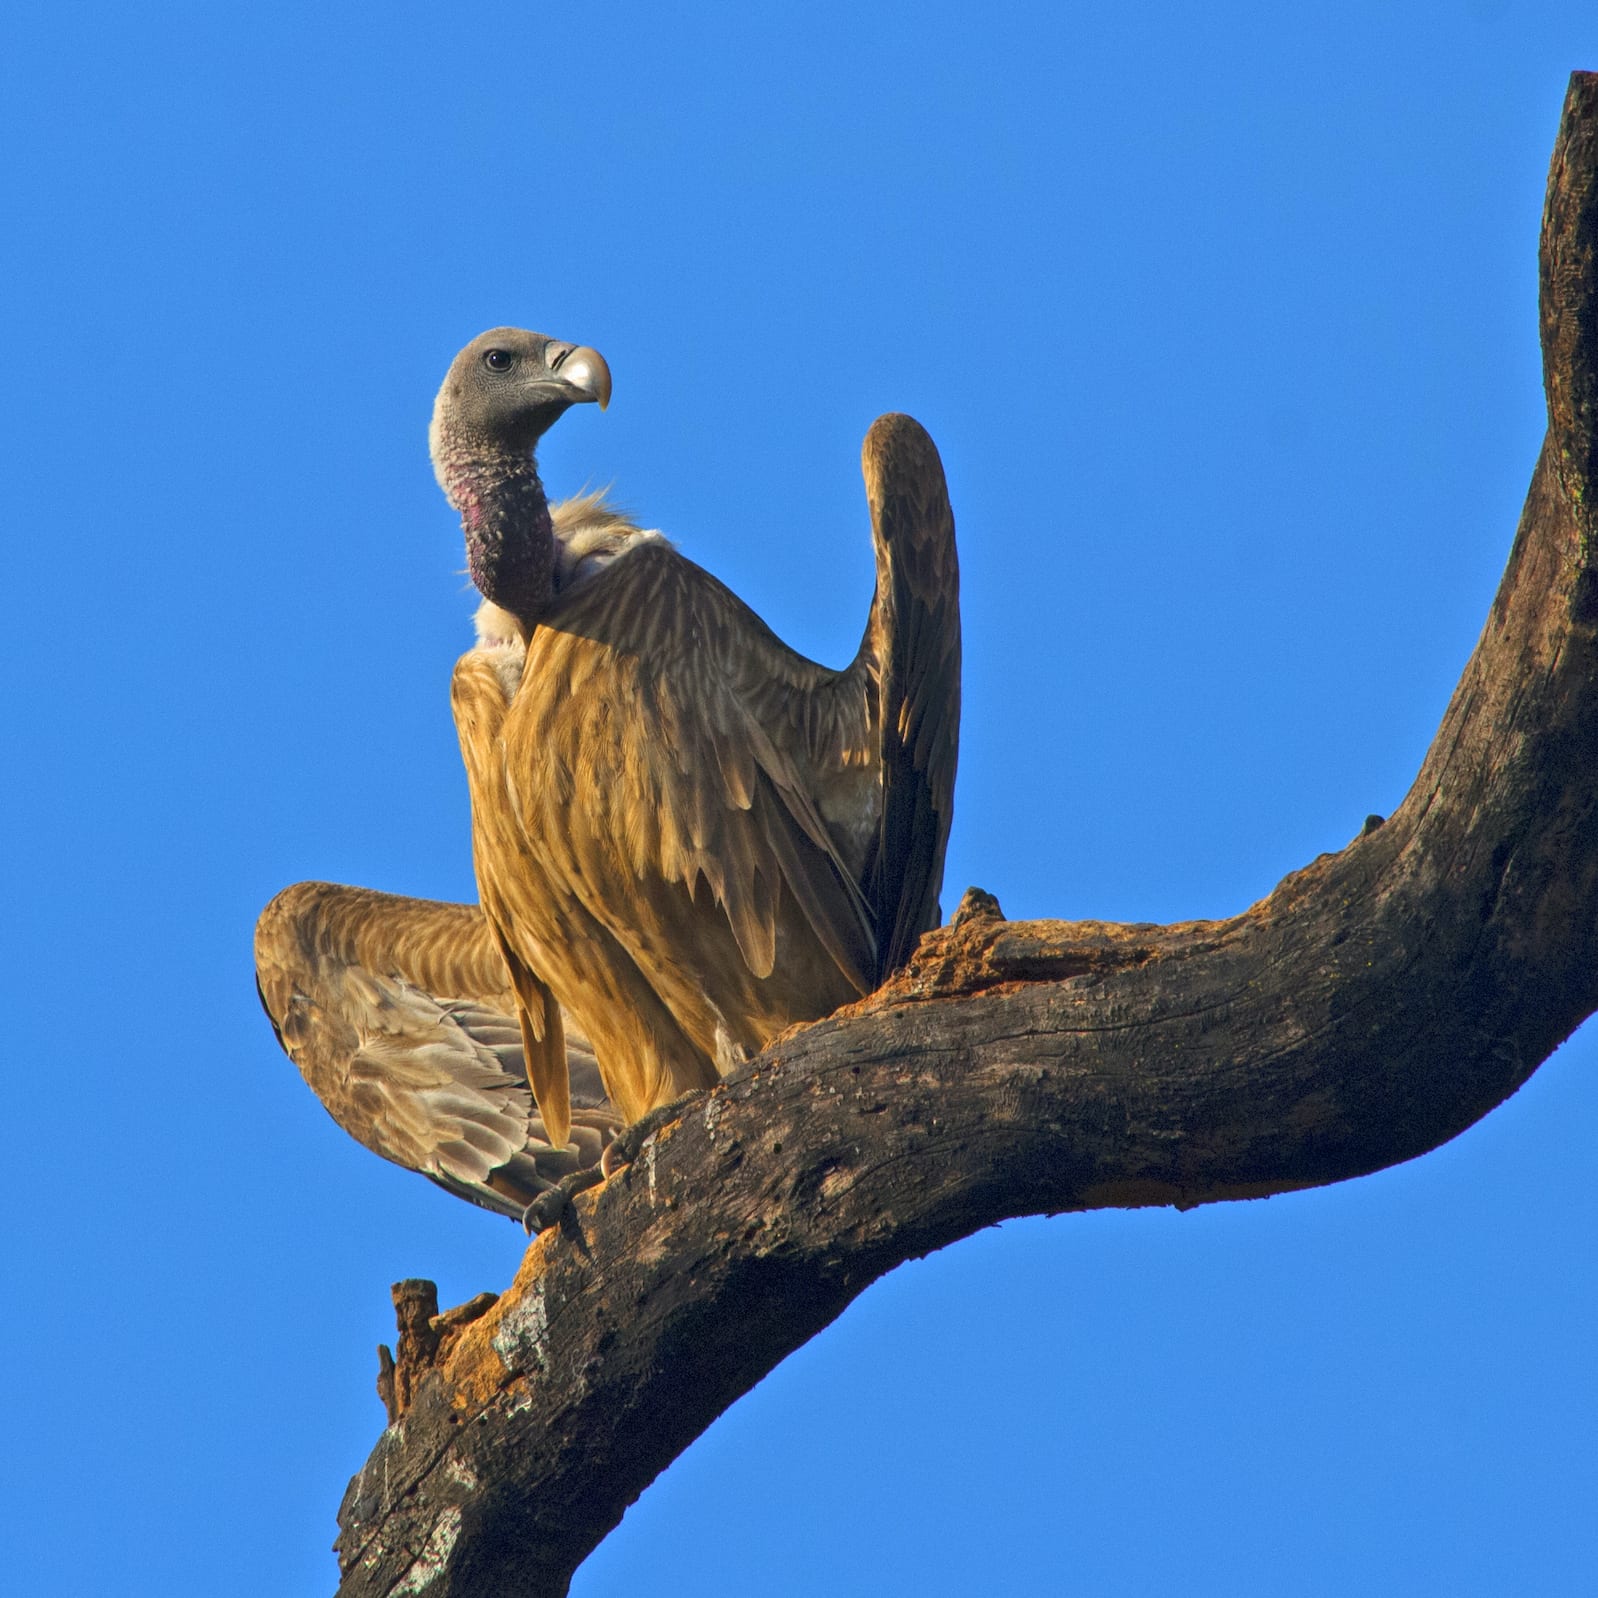 Image of Long-billed Vulture